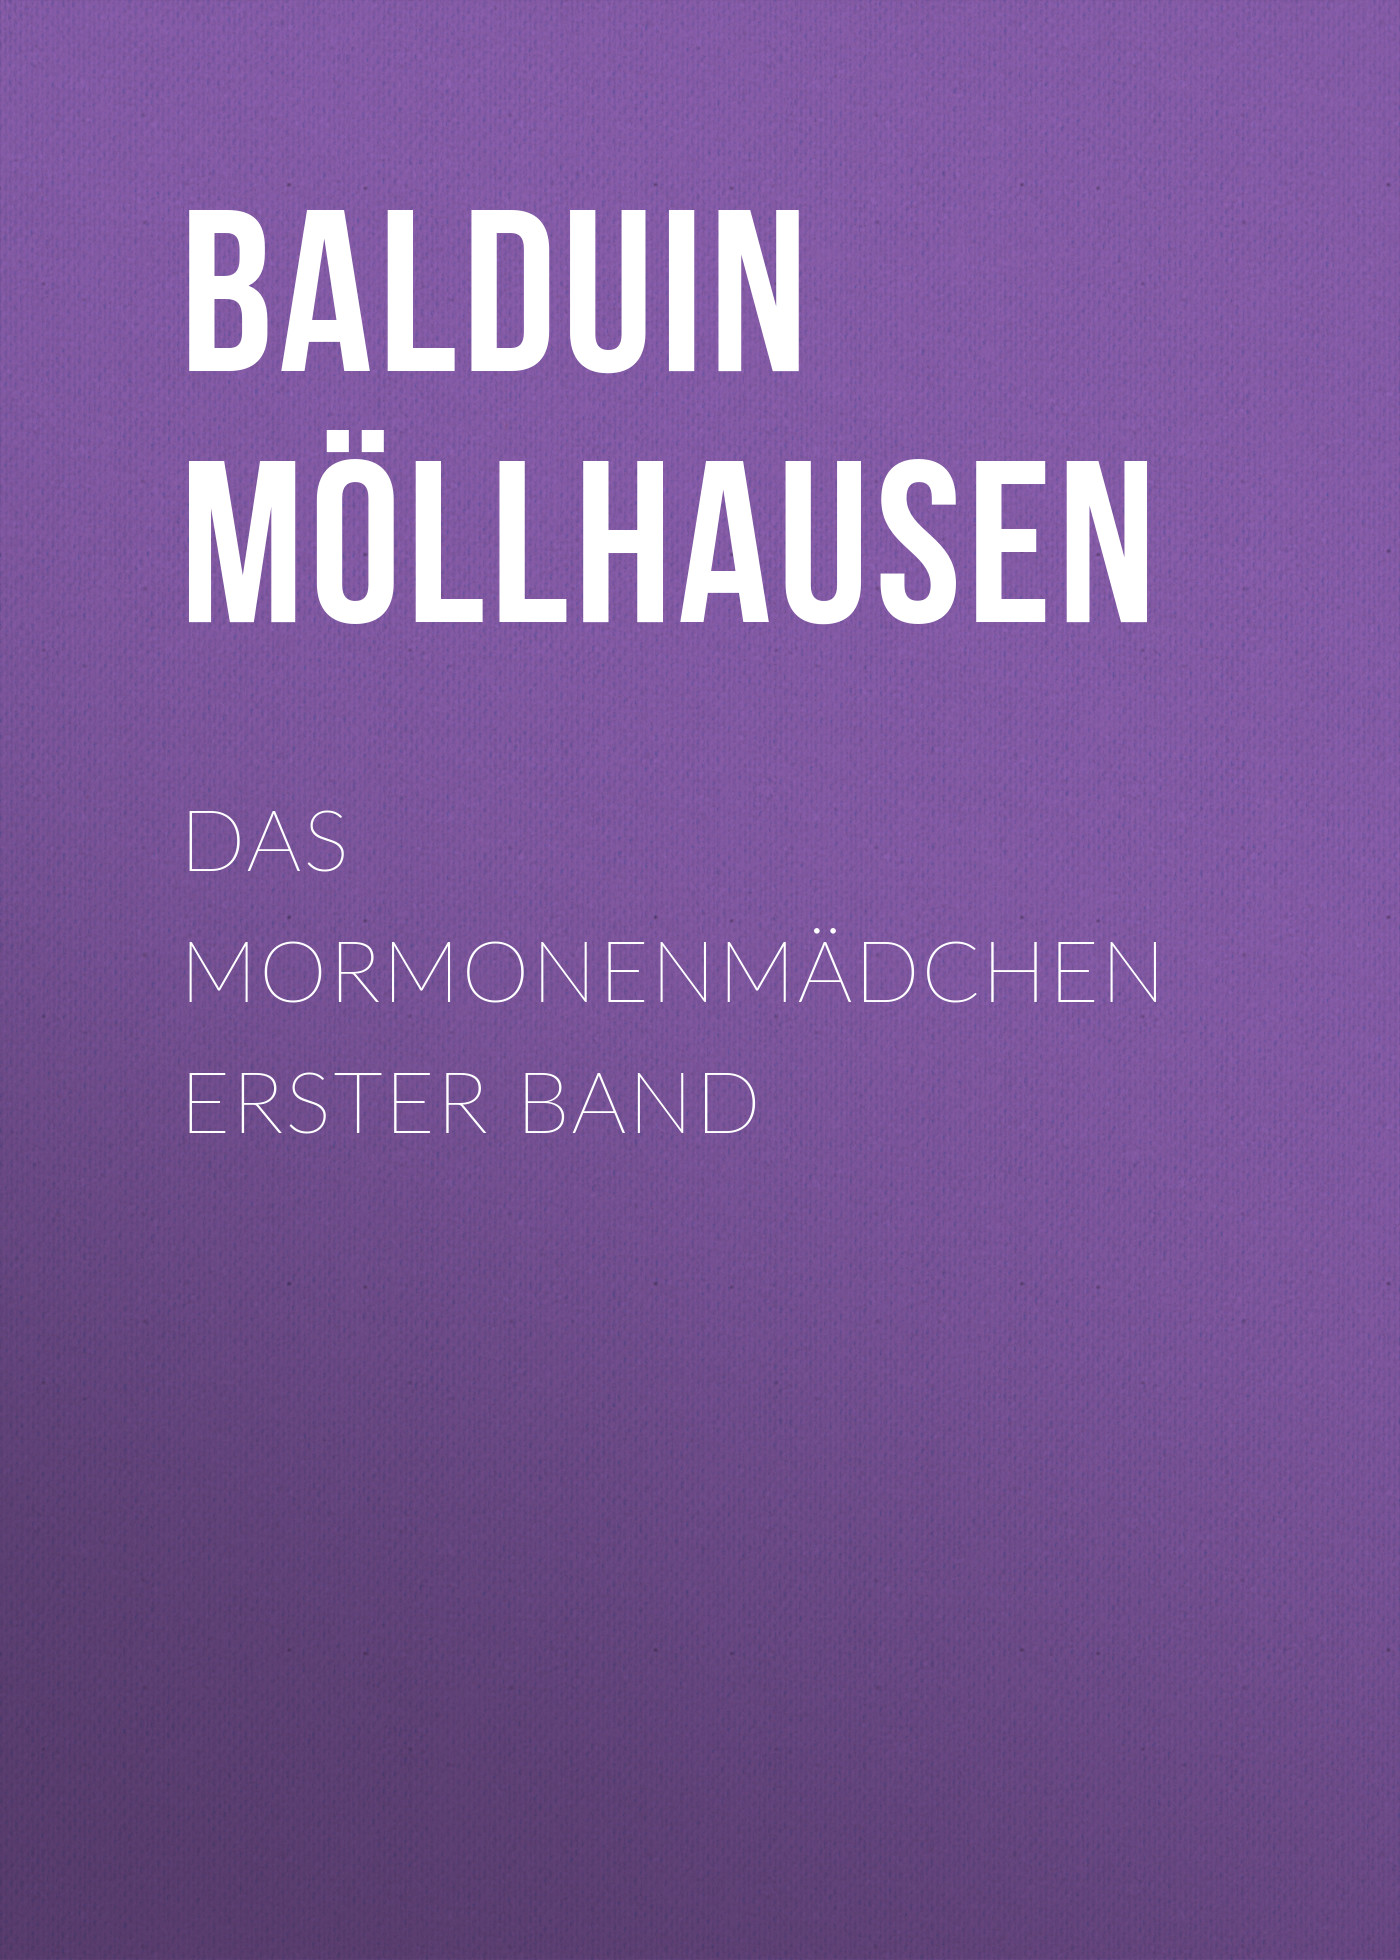 Книга Das Mormonenmädchen Erster Band из серии , созданная Balduin Möllhausen, может относится к жанру Зарубежная классика. Стоимость электронной книги Das Mormonenmädchen Erster Band с идентификатором 48633036 составляет 0 руб.